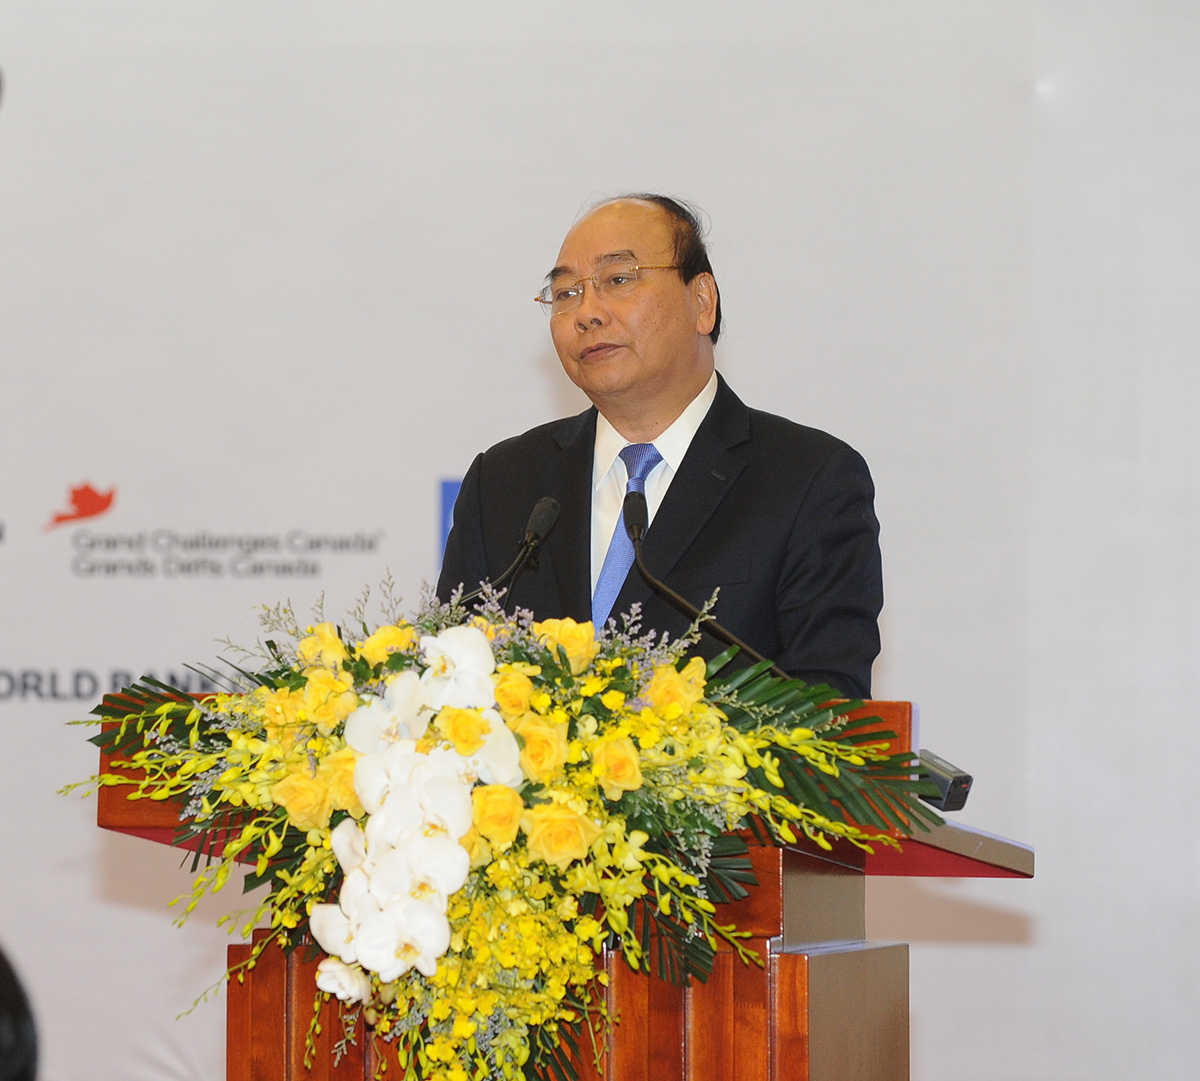 Liên minh Đổi mới Phát triển Quốc tế (IDIA) với sự tham gia của Thủ tướng Nguyễn Xuân Phúc và 11 bộ trưởng, chuyên gia kỹ thuật, nhà nghiên cứu và các nhà lãnh đạo khu vực tư nhân từ cộng đồng quốc tế và Việt Nam. Hội nghị đã giúp đưa ra định hướng về chương trình đổi mới sáng tạo tương lai của Việt Nam.